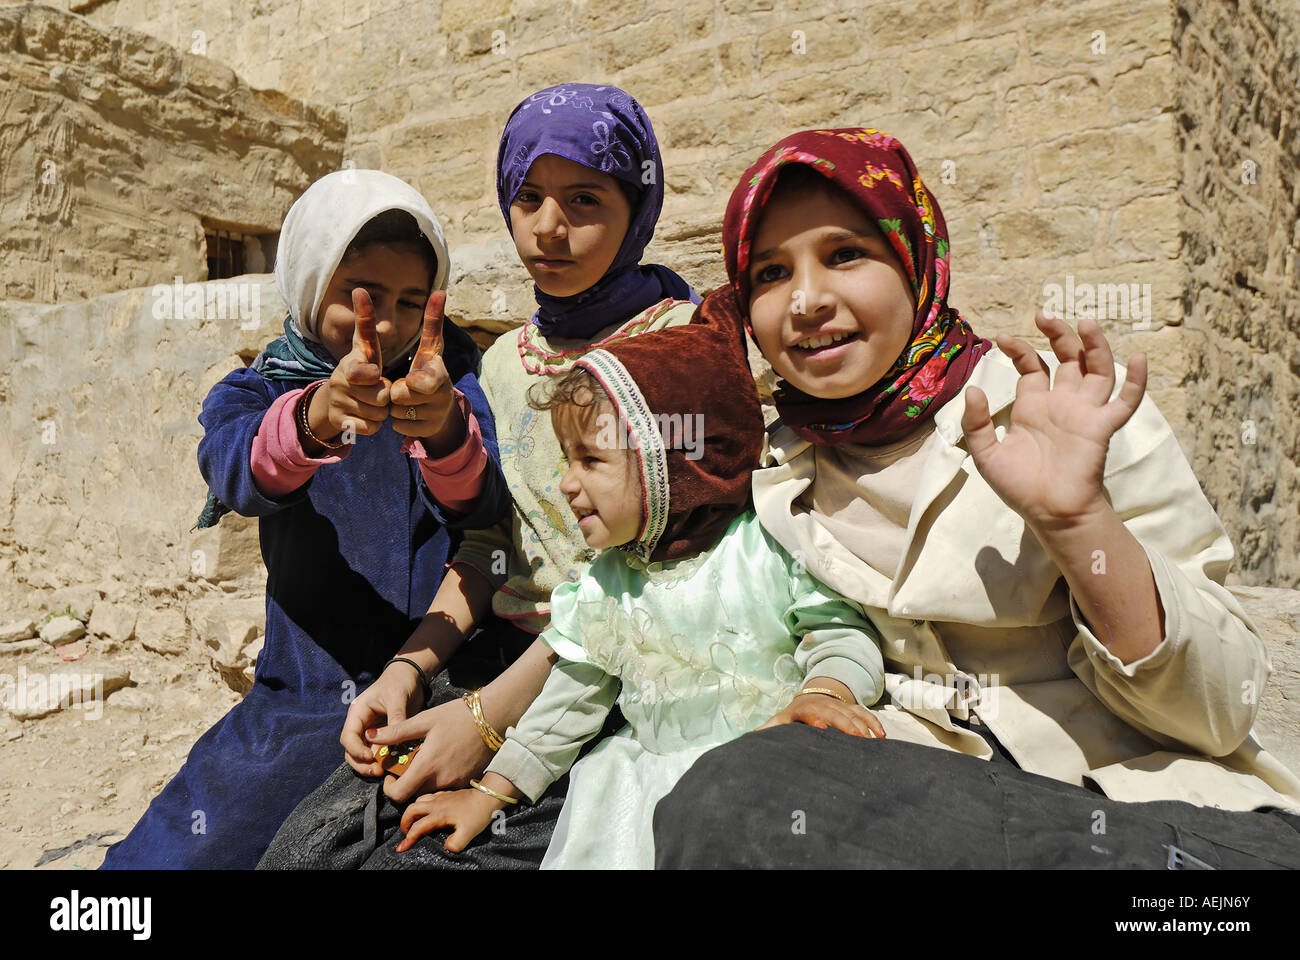 Children in Habbaba, Yemen Stock Photo